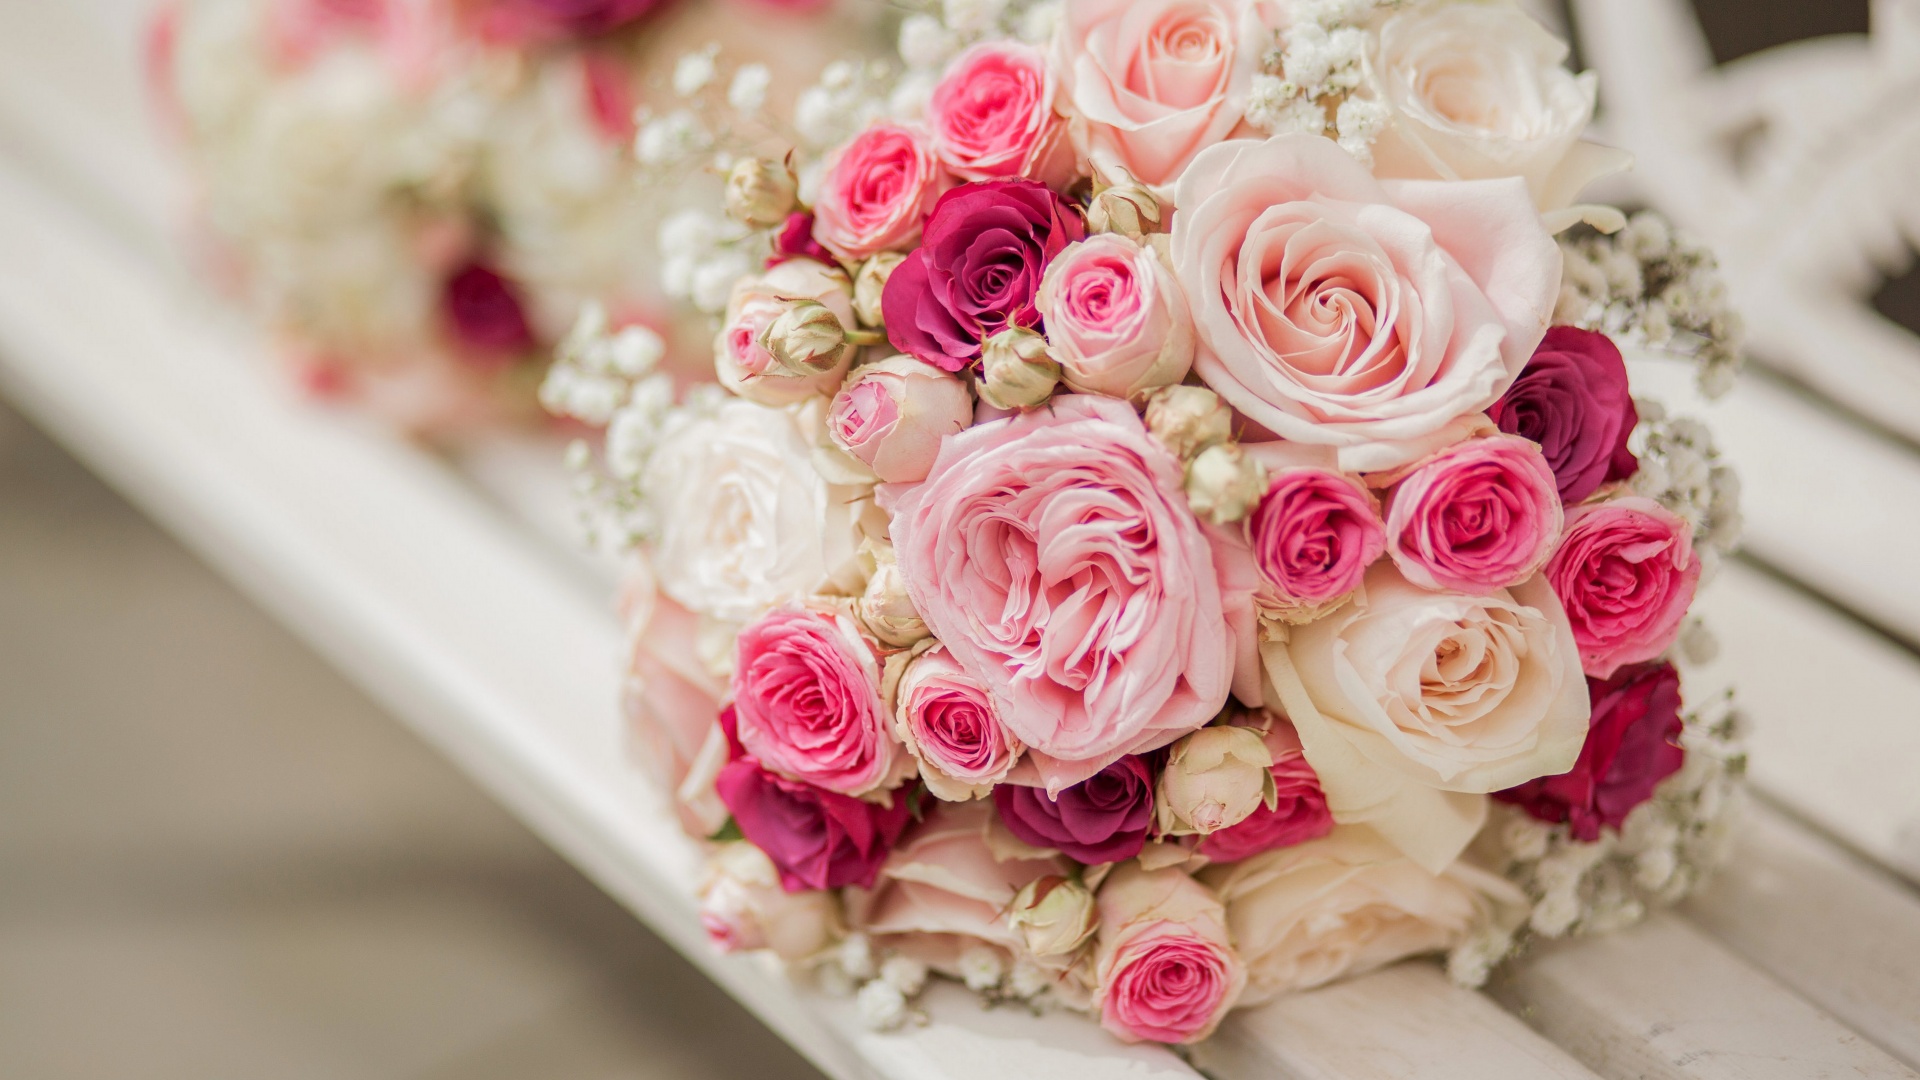 粉红色玫瑰玫瑰的花束桌面壁纸 花卉壁纸 壁纸下载 彼岸桌面